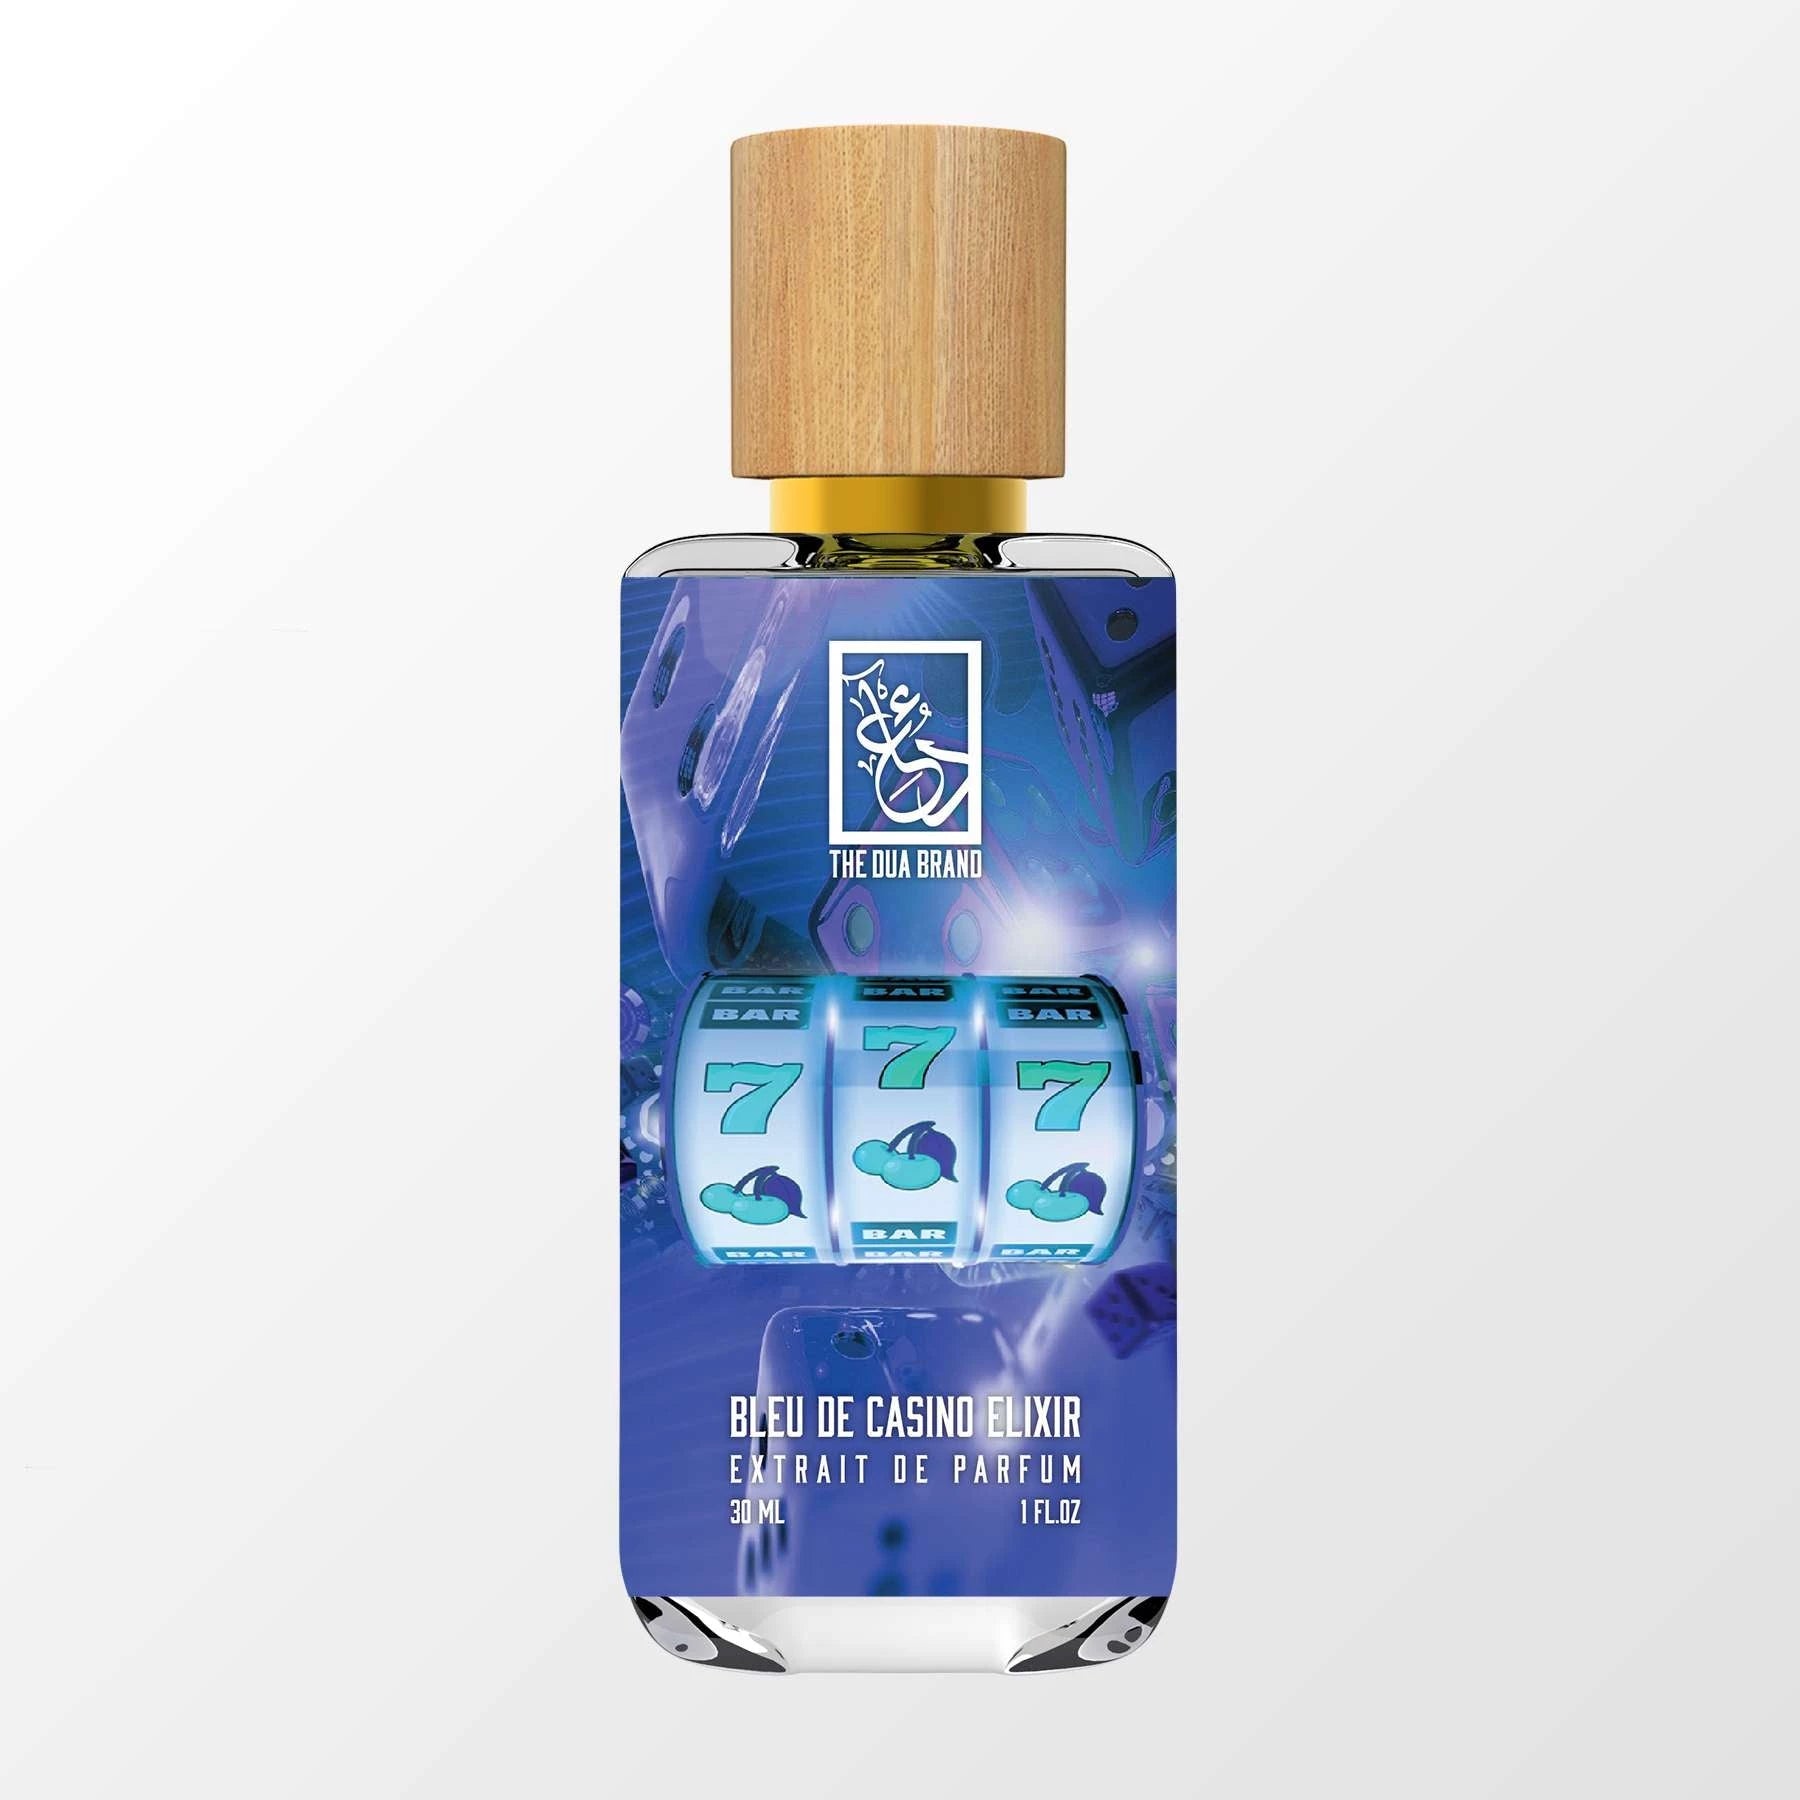 Bleu De Casino Elixir - DUA FRAGRANCES - Fruity Chypre - Masculine Perfume  - 34ml/1.1 FL OZ - Extrait De Parfum